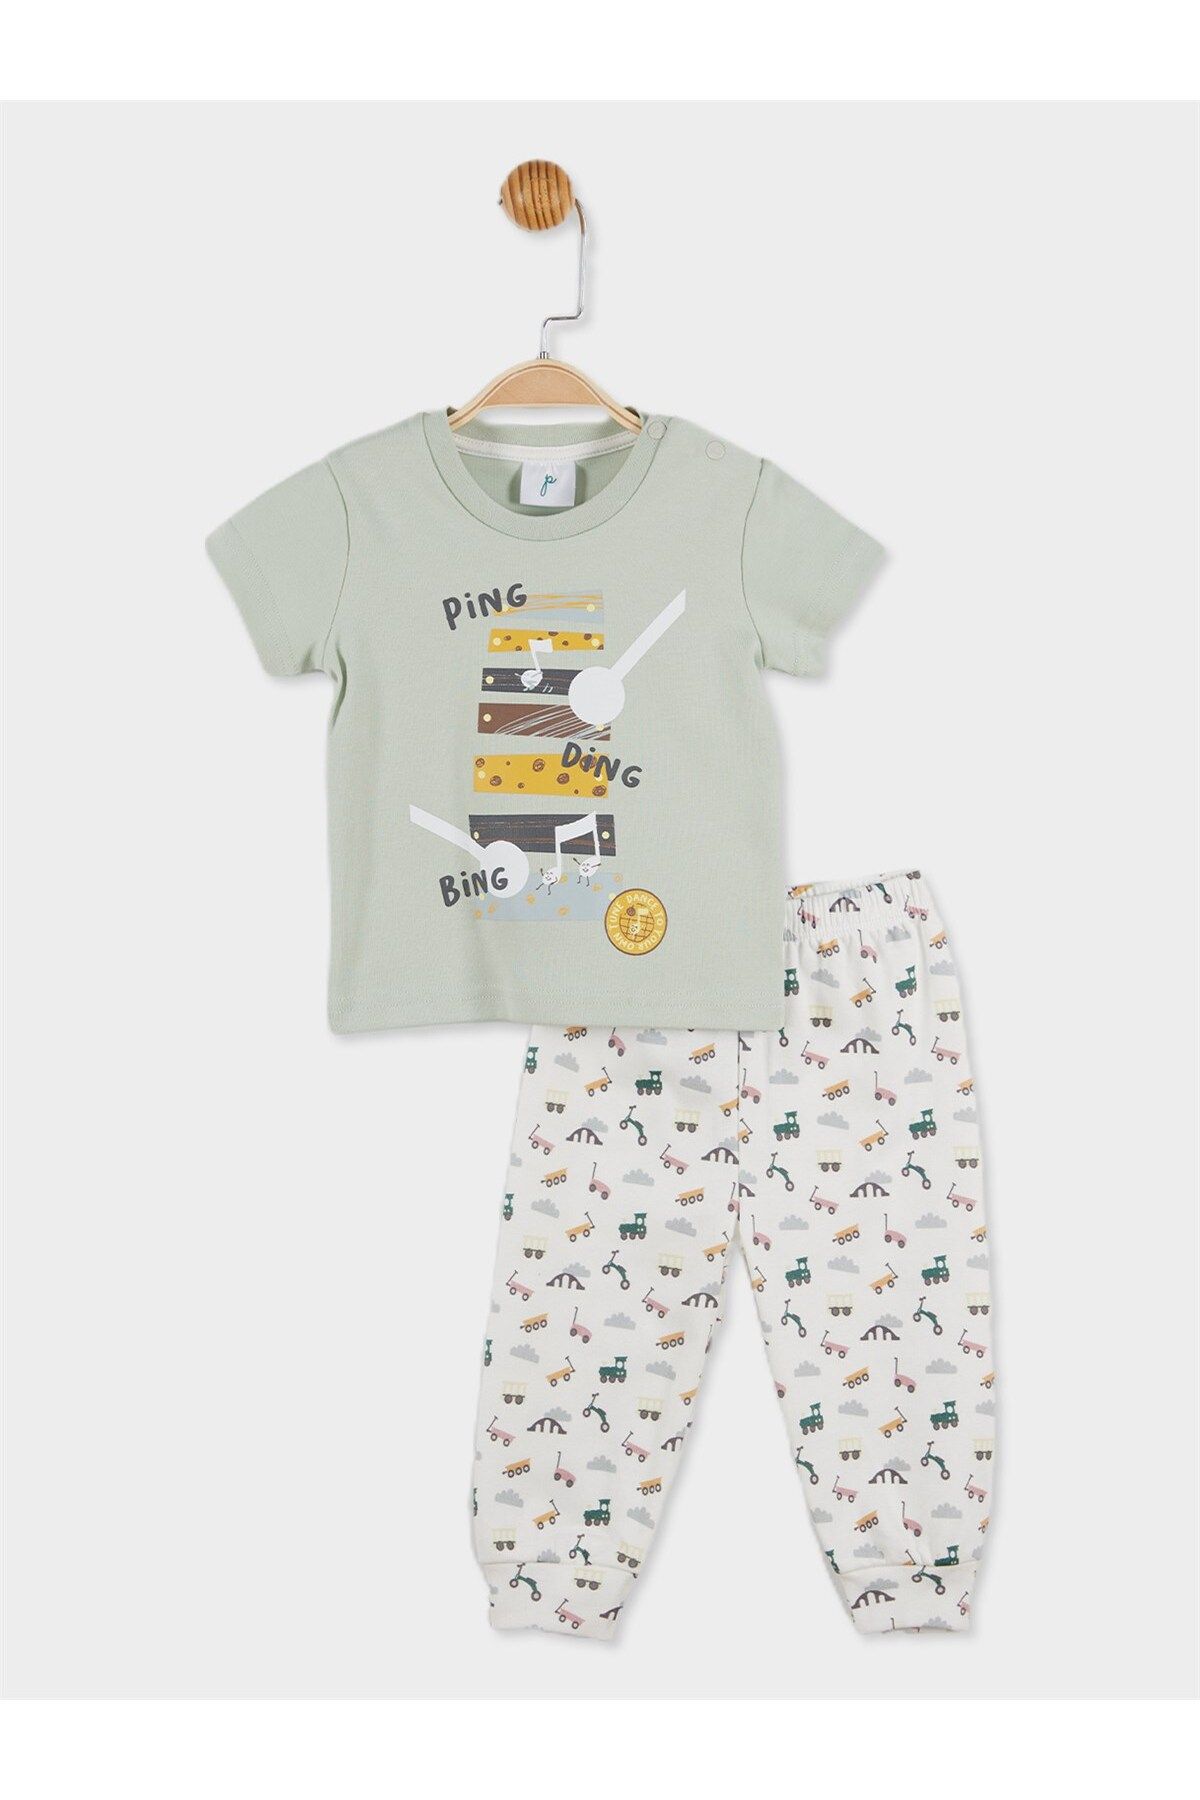 Panolino Erkek Bebek Baskılı Pijama Takımı 20741